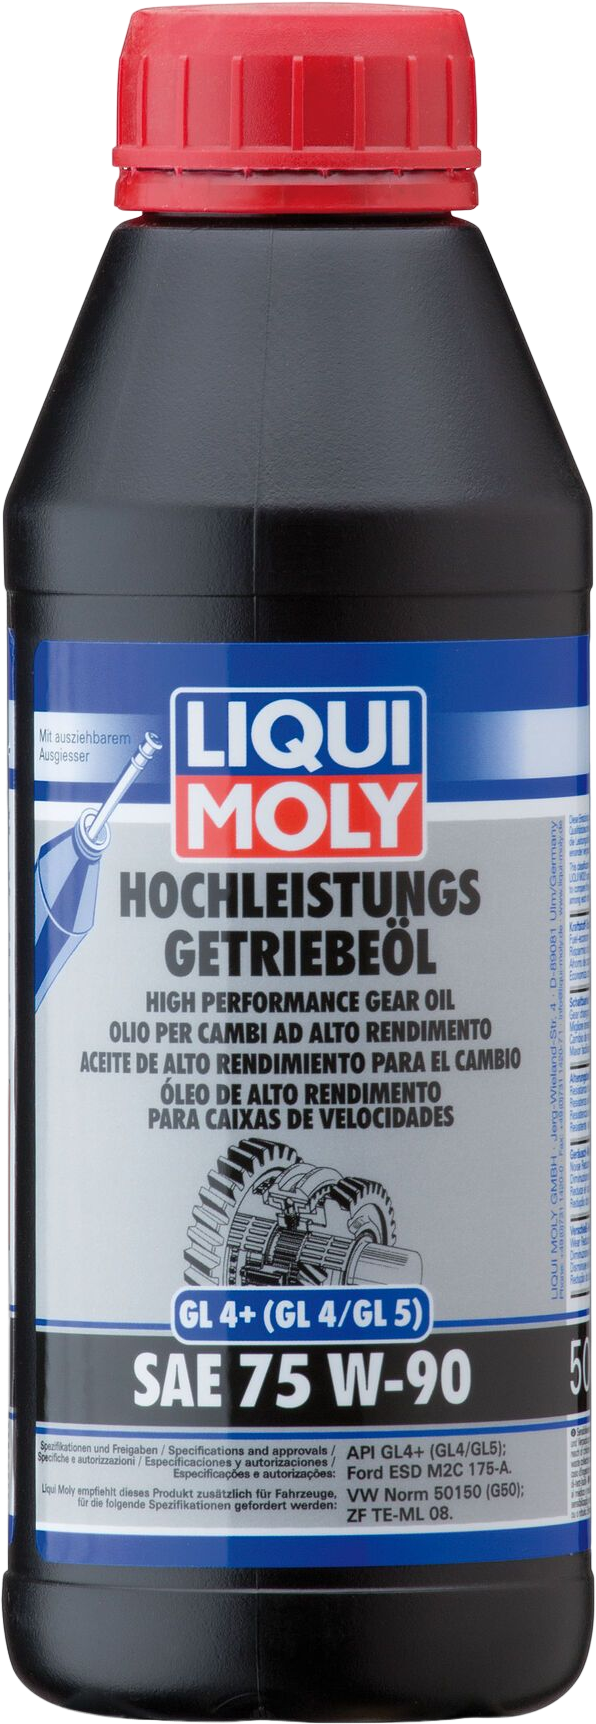 Liqui Moly Krachtige transmissieolie (GL4+) SAE 75W-90, 6 x 500 ml detail 2